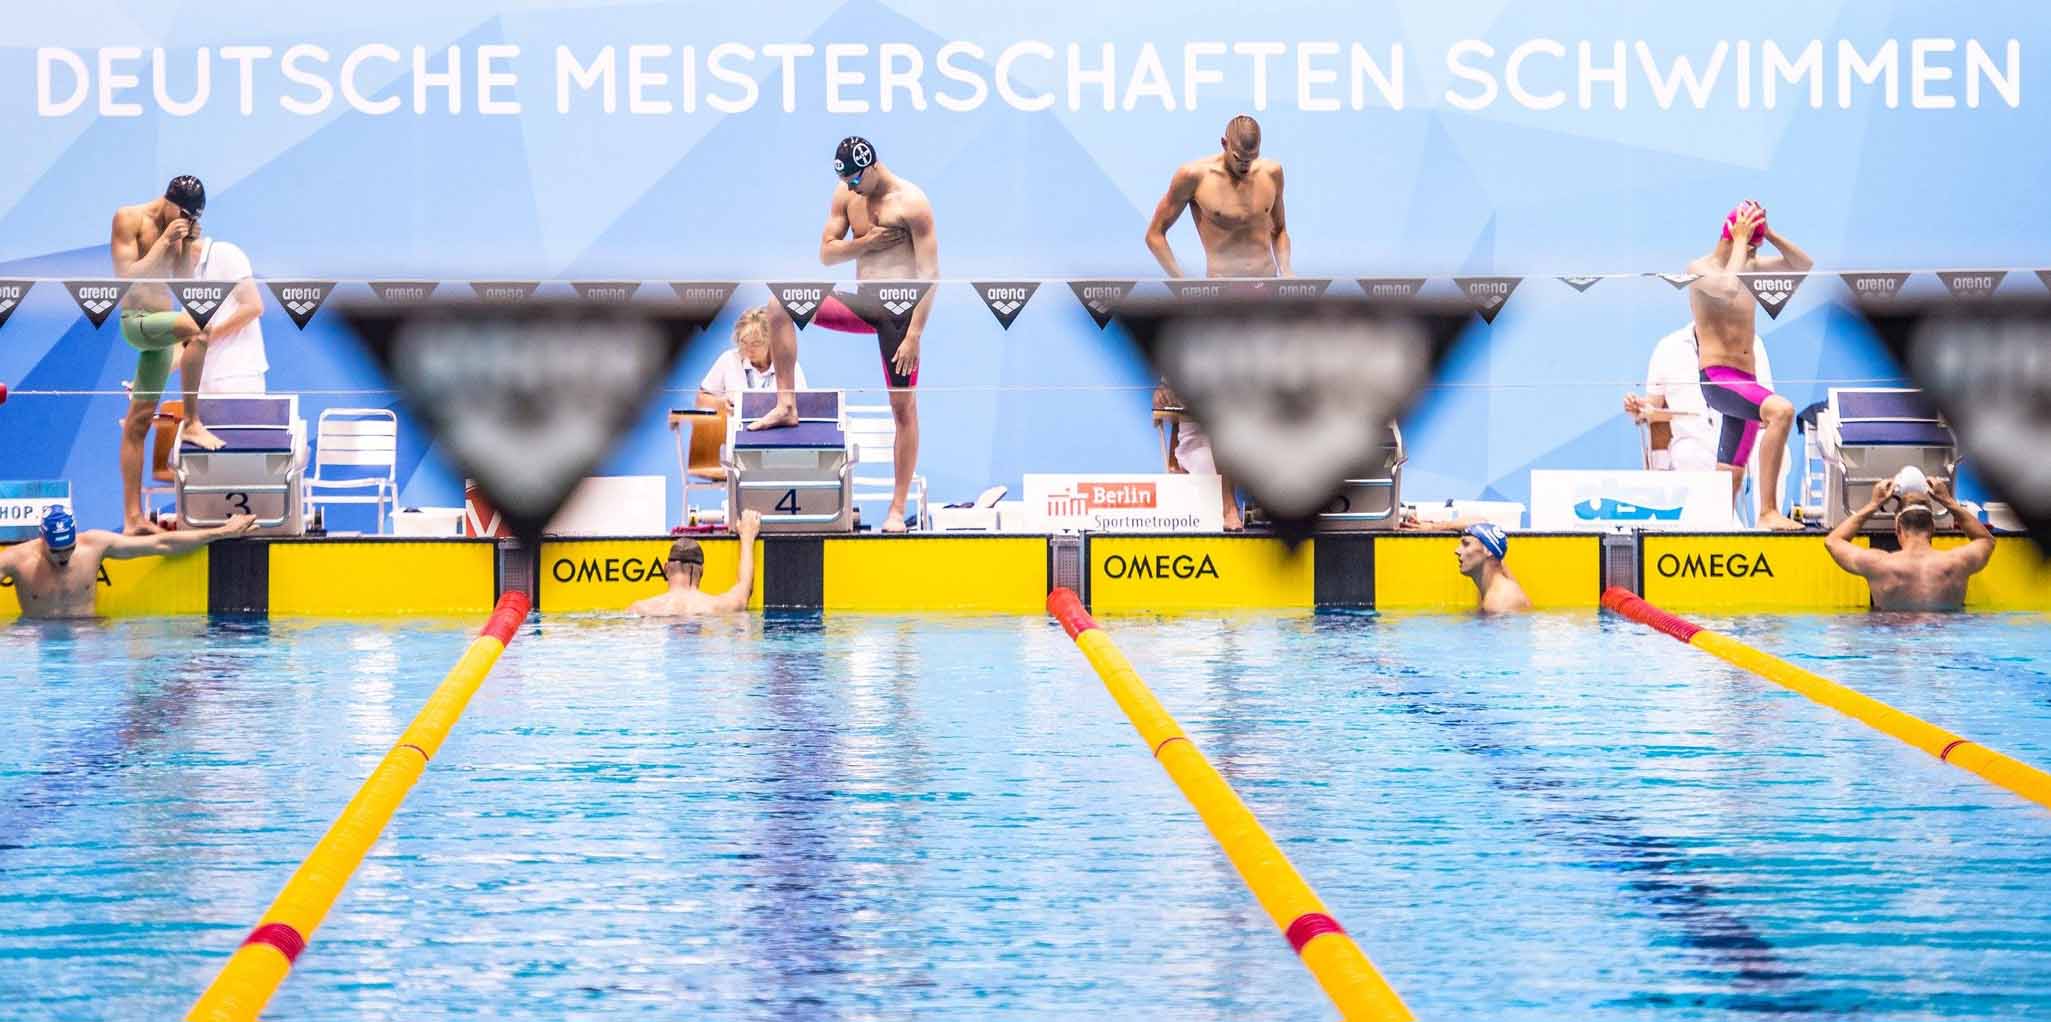 deutsche meisterschaften schwimmen 2022 live stream